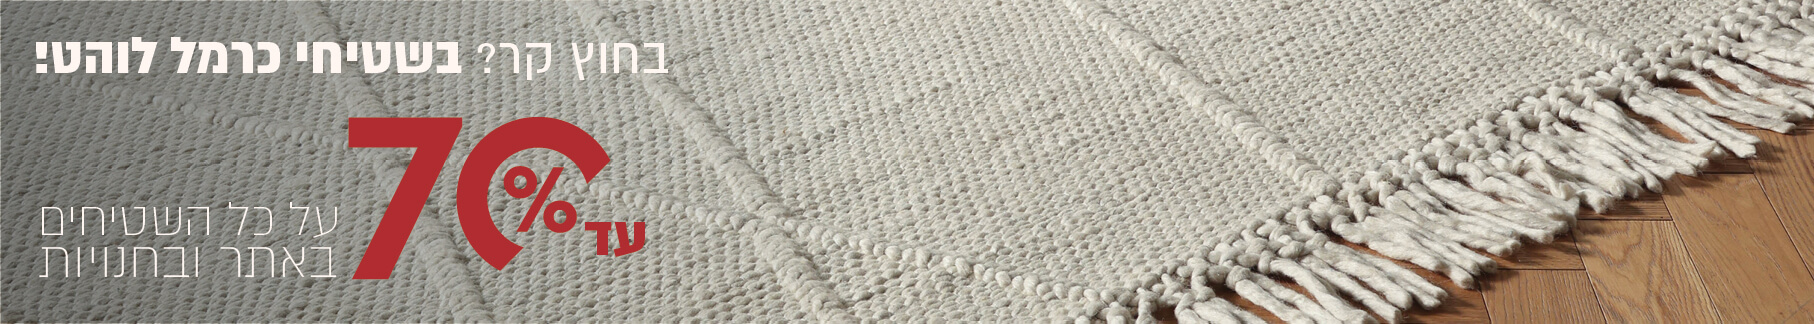 בחוץ קר? בשטיחי כרמל  לוהט עד 70% הנחה על כל  השטיחים